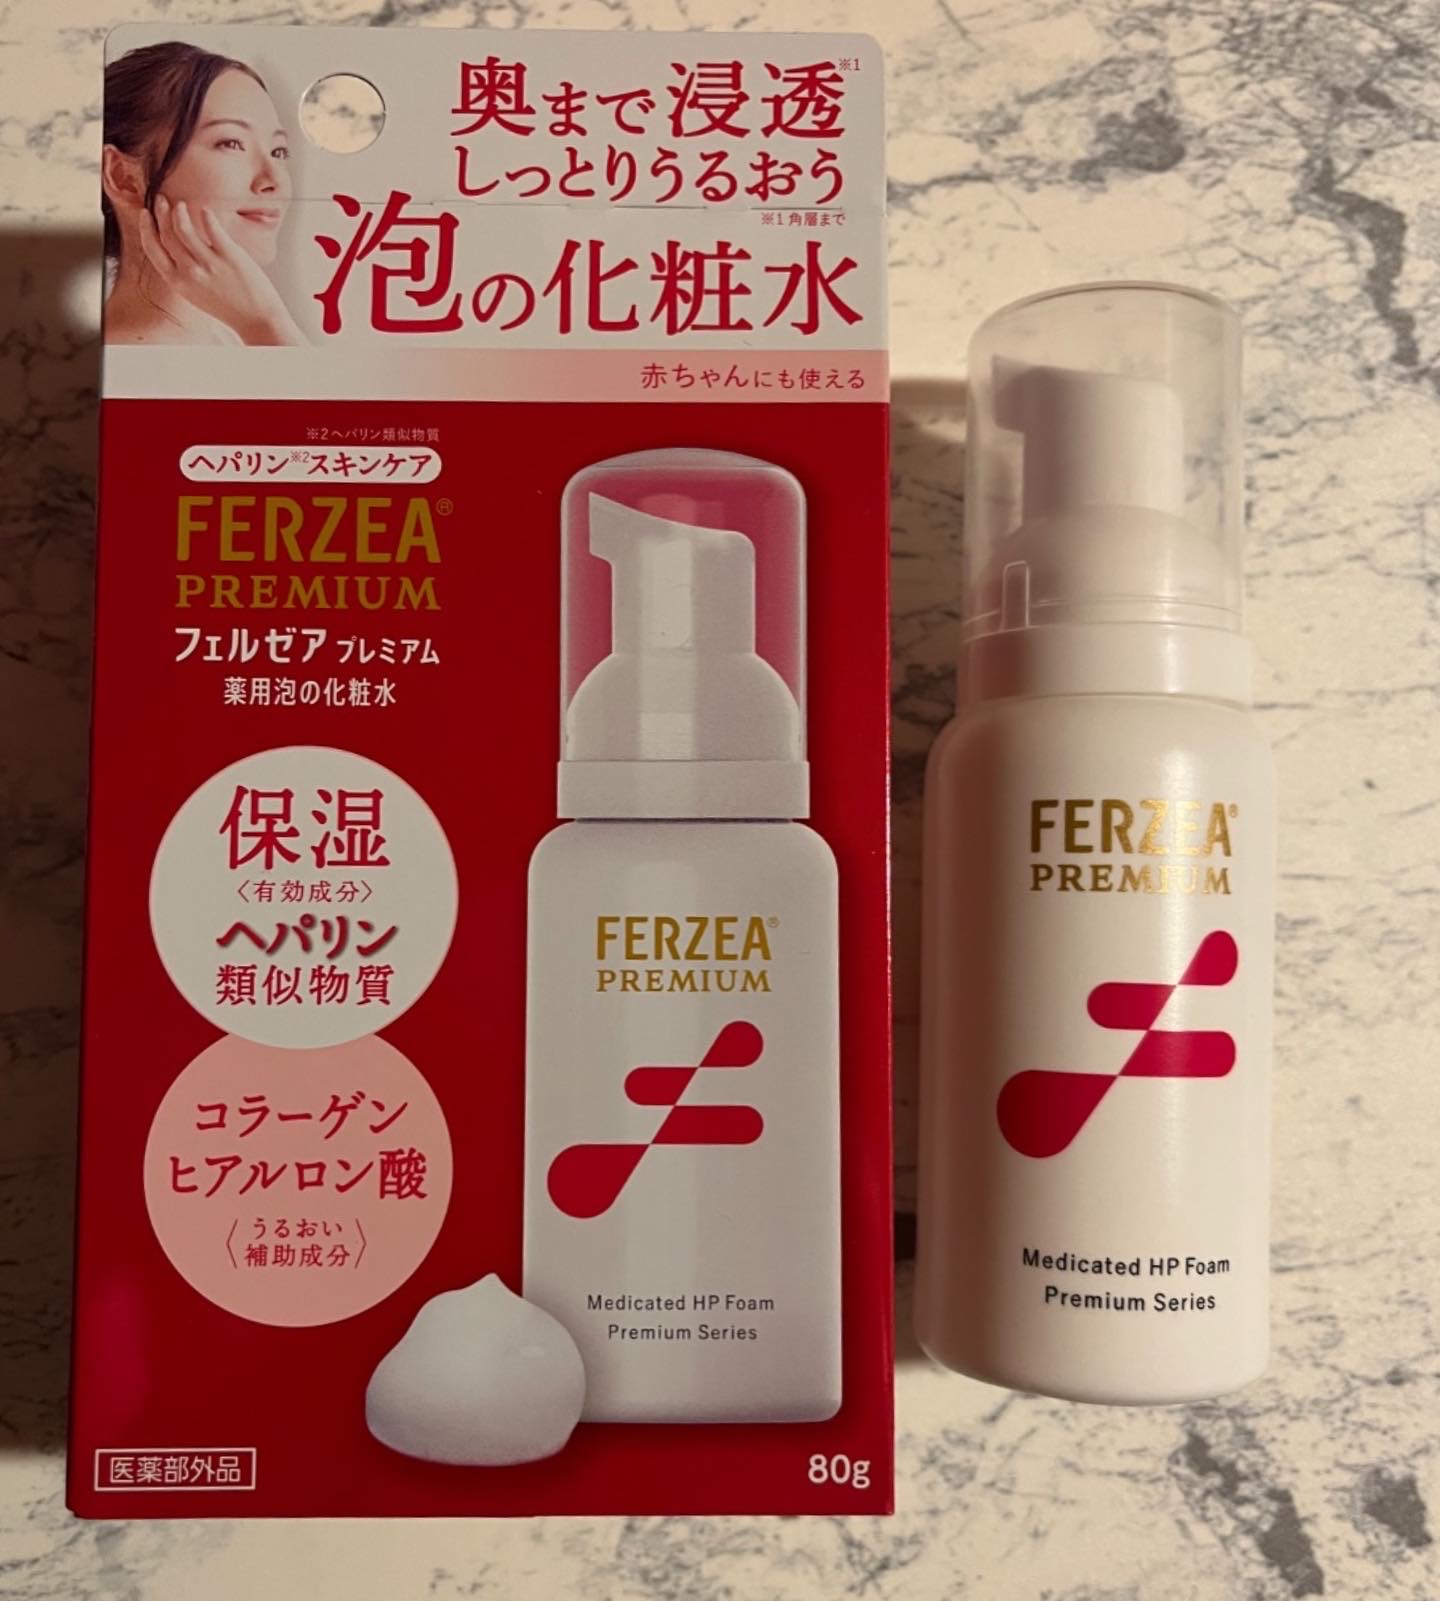 フェルゼア / フェルゼアプレミアム 薬用泡の化粧水の公式商品情報